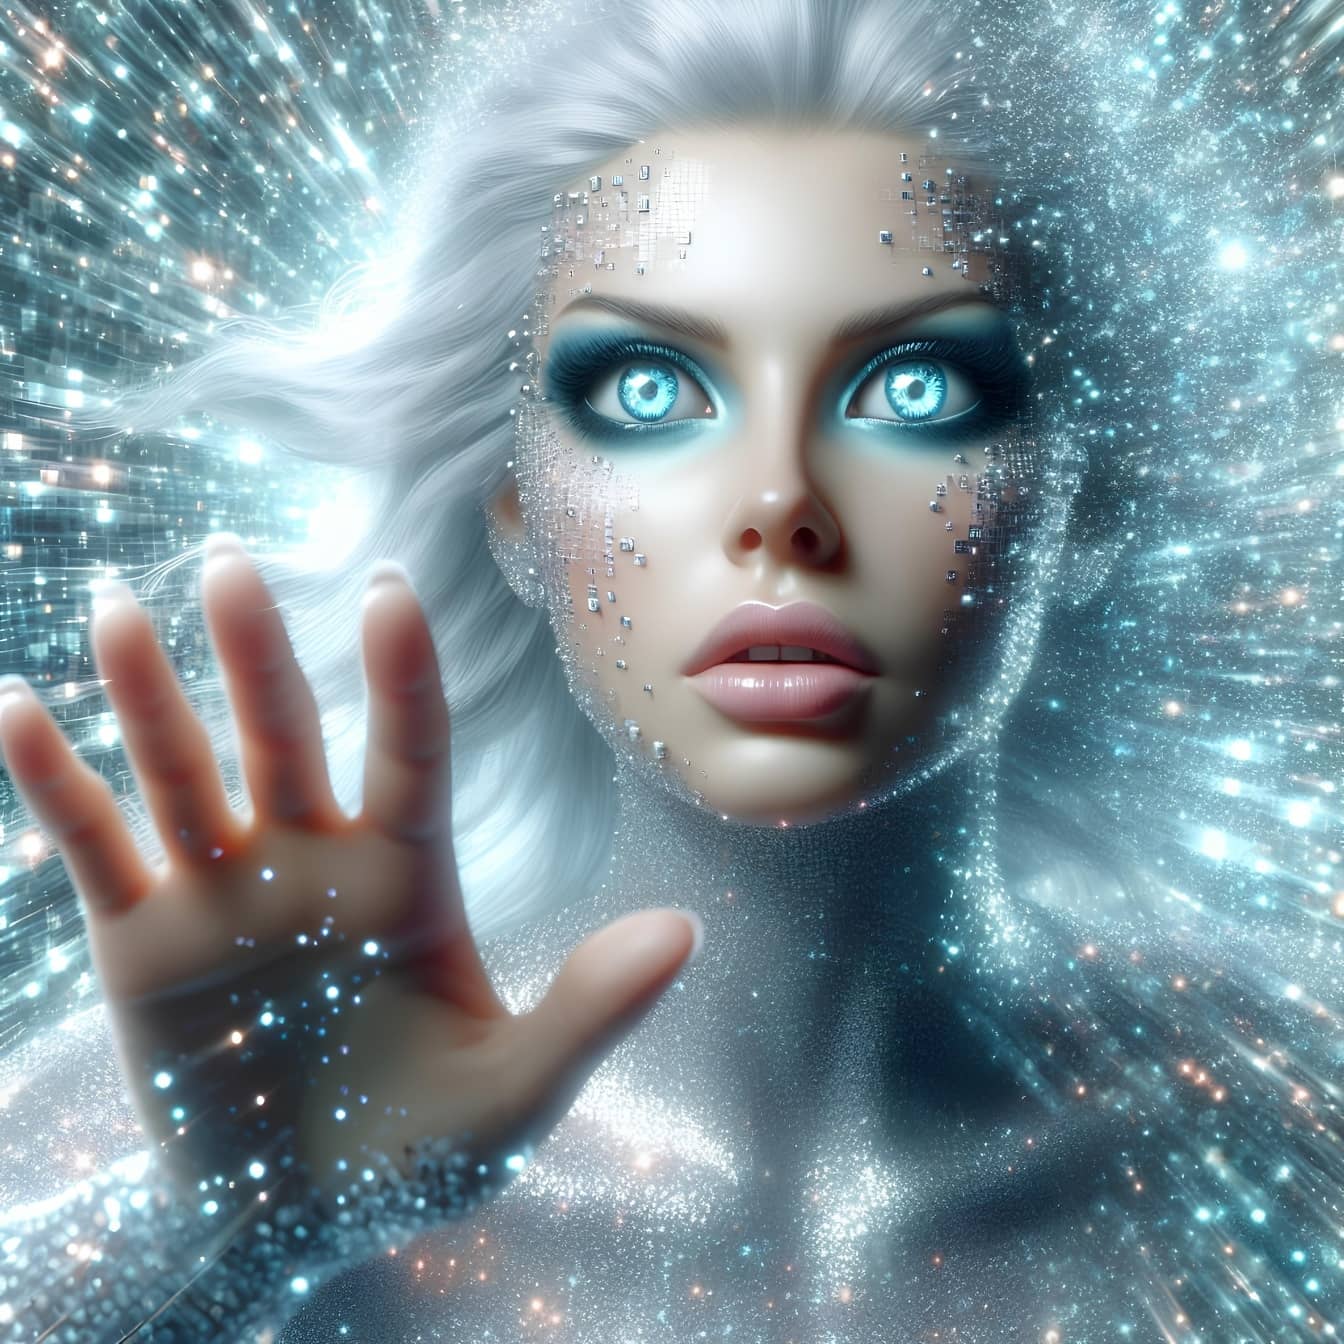 Mulher-ciborgue humanoide usa a técnica da hipnose quântica para transferir energia astral